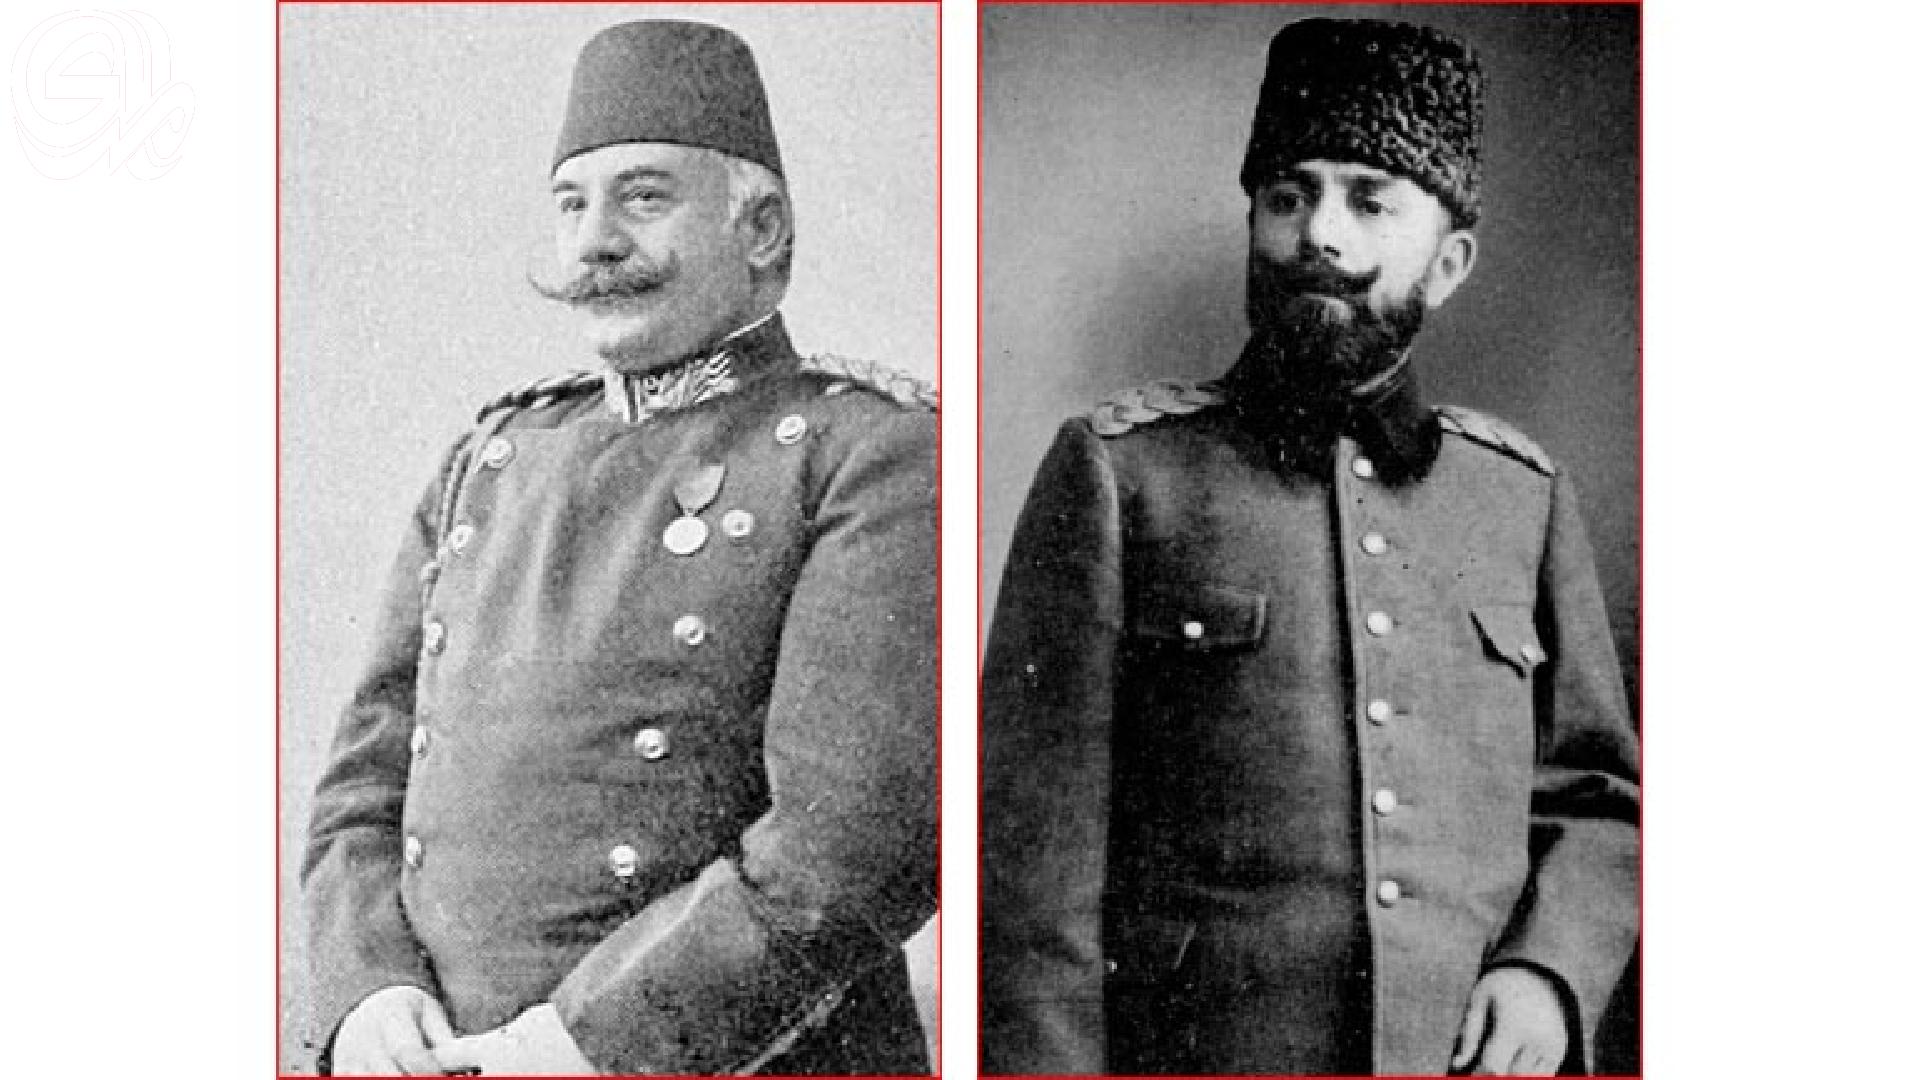 إعلان الدستور العثماني في بغداد سنة 1908..بين ناظم باشا وجمال باشا في ولاية بغداد